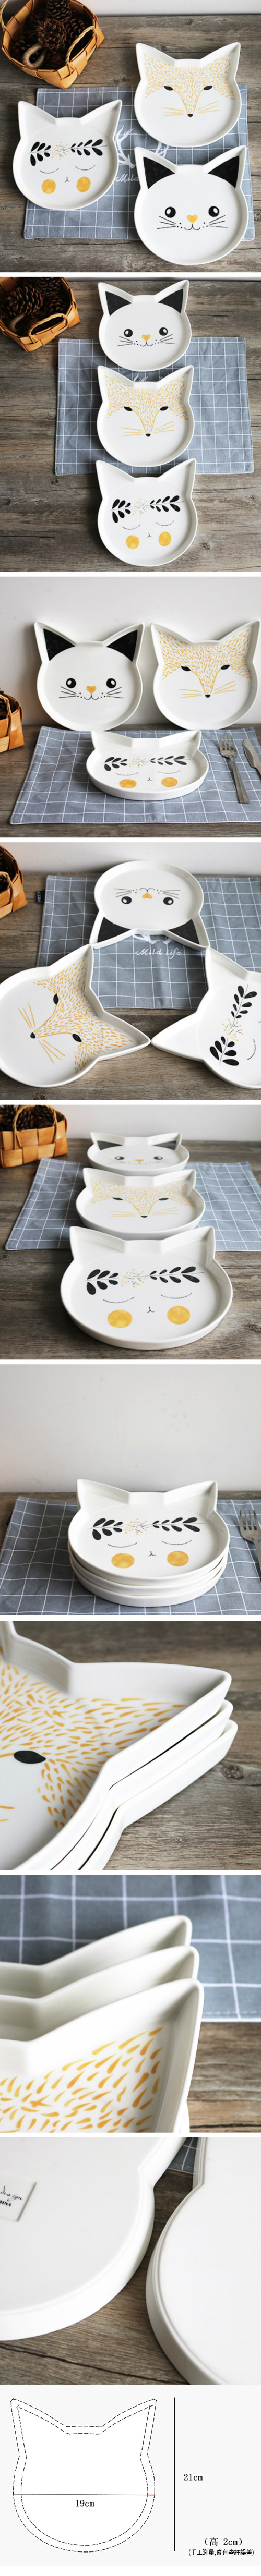 創意小物館 動物陶瓷盤 - 葉子貓